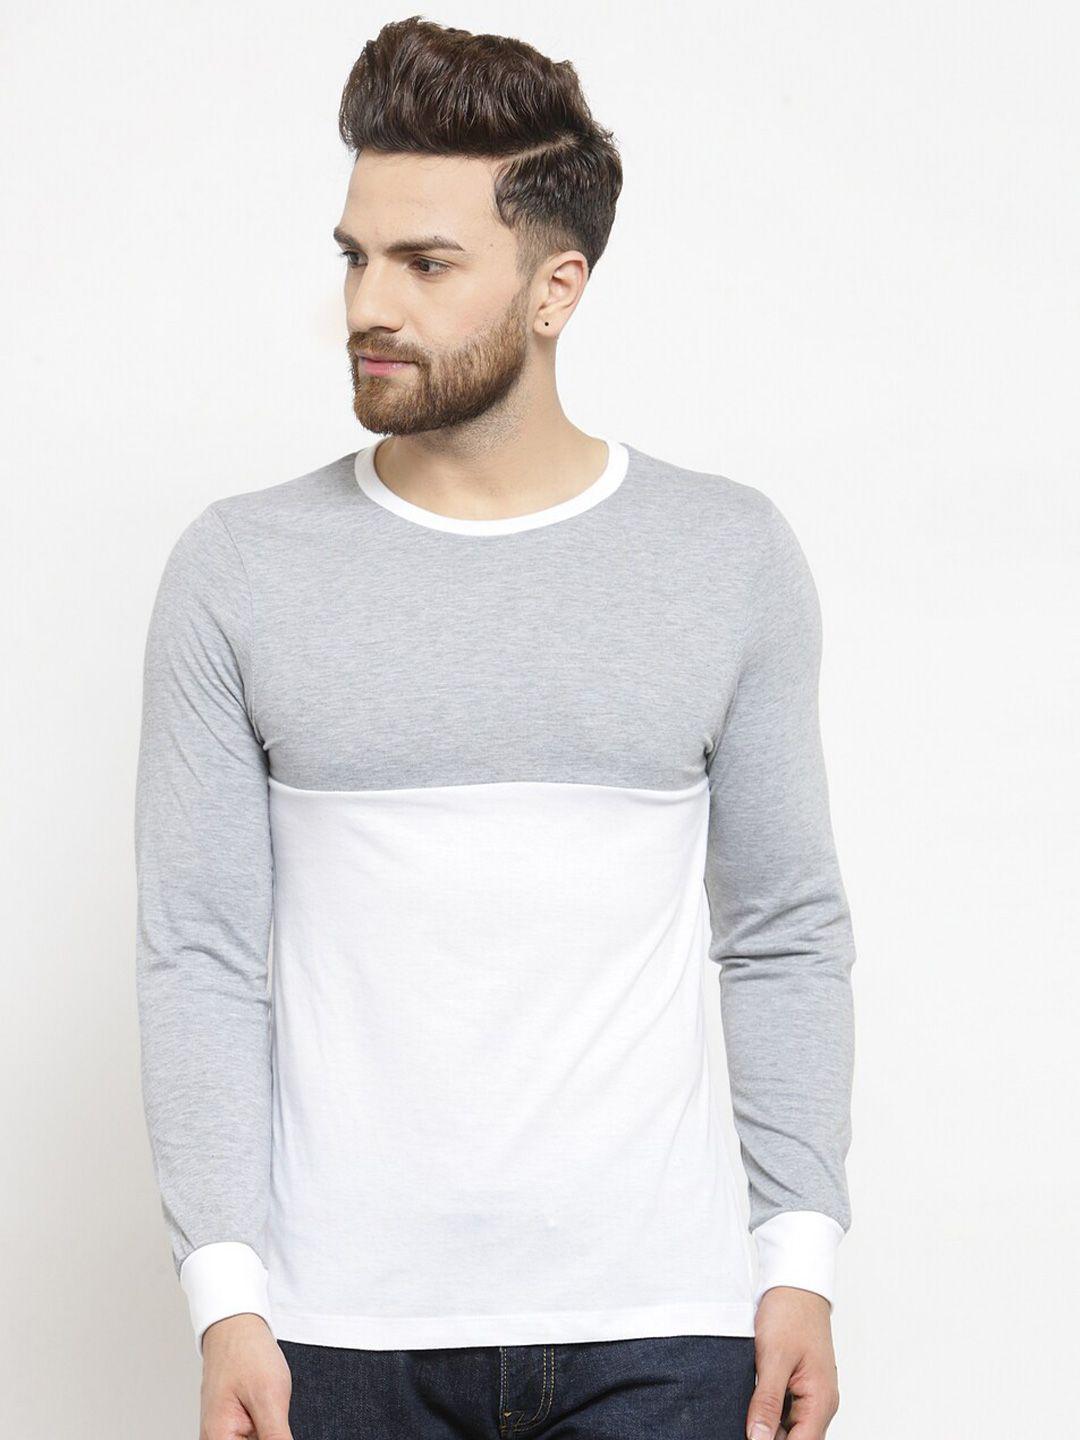 kalt men grey melange & white colourblocked t-shirt